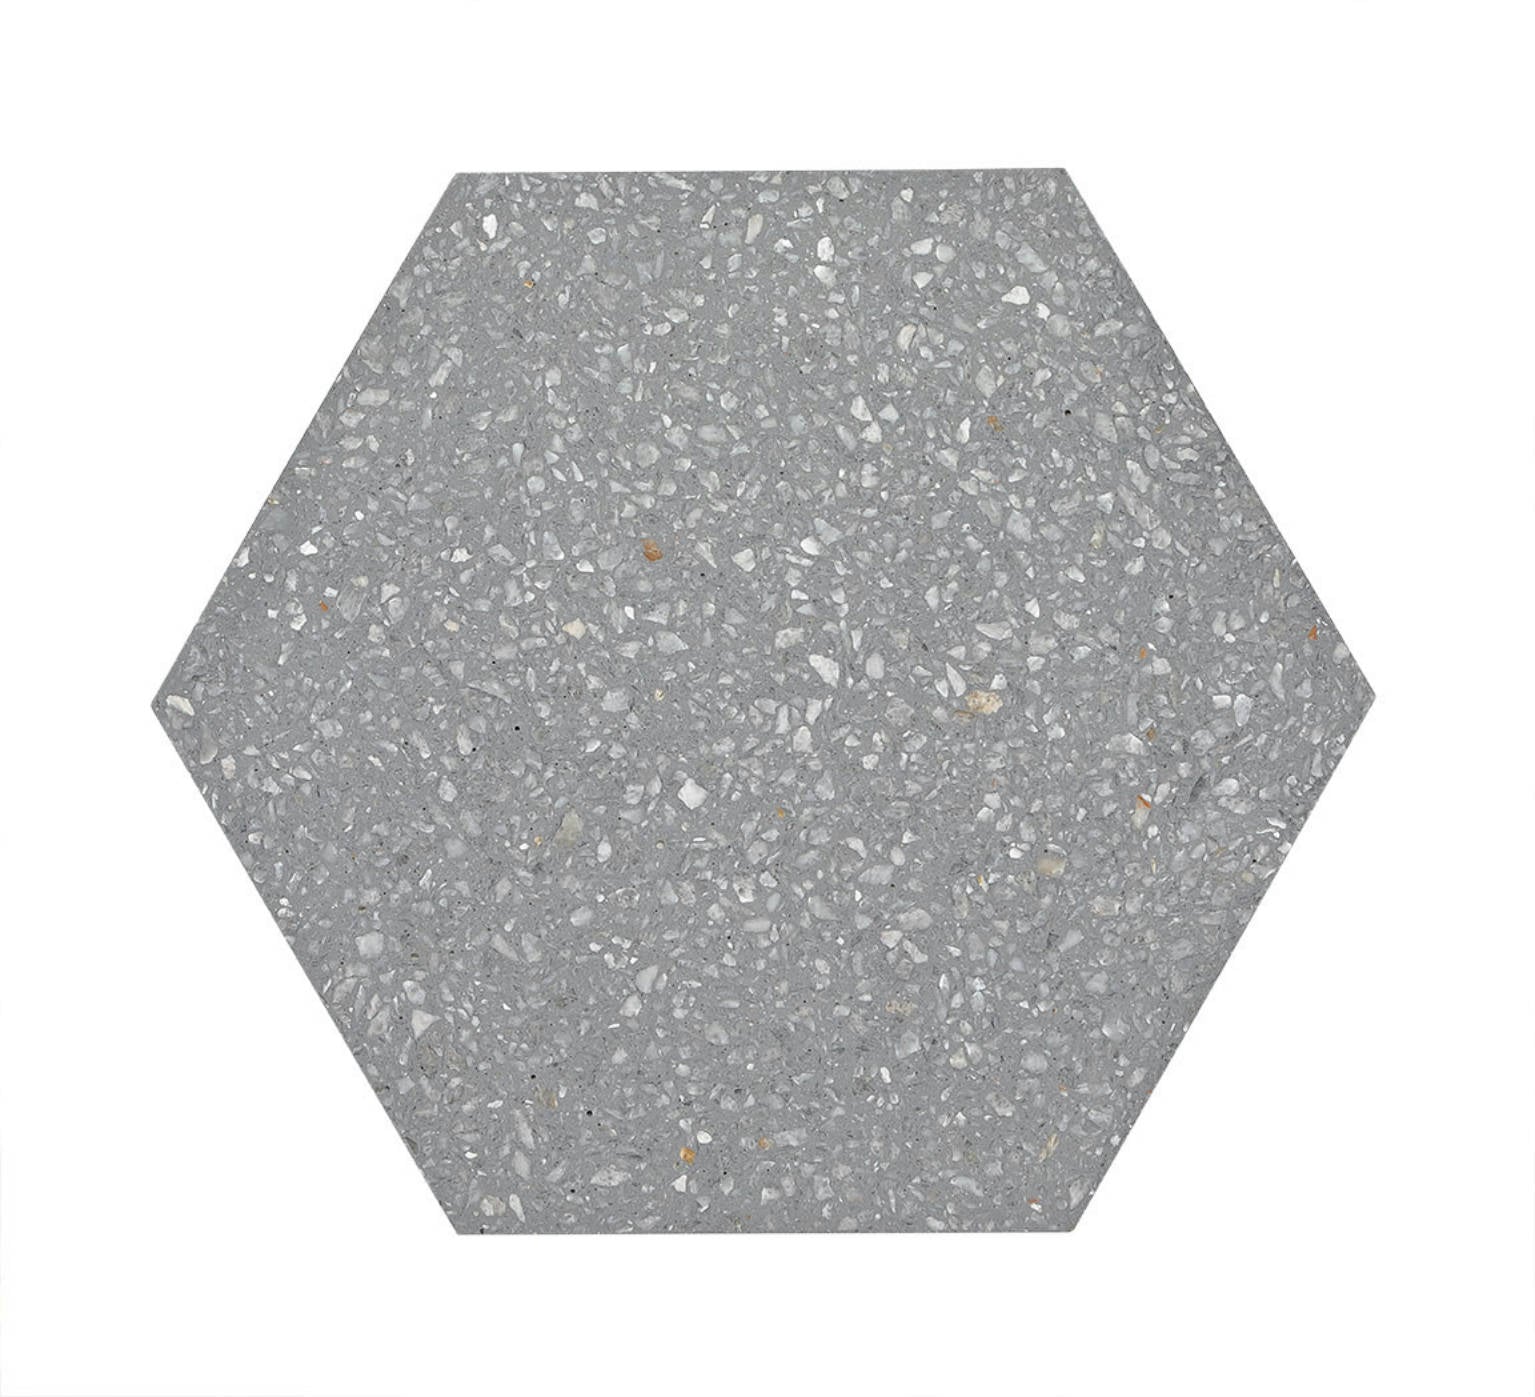 ALF Terrazo Hexagon Silver Gray 8x8